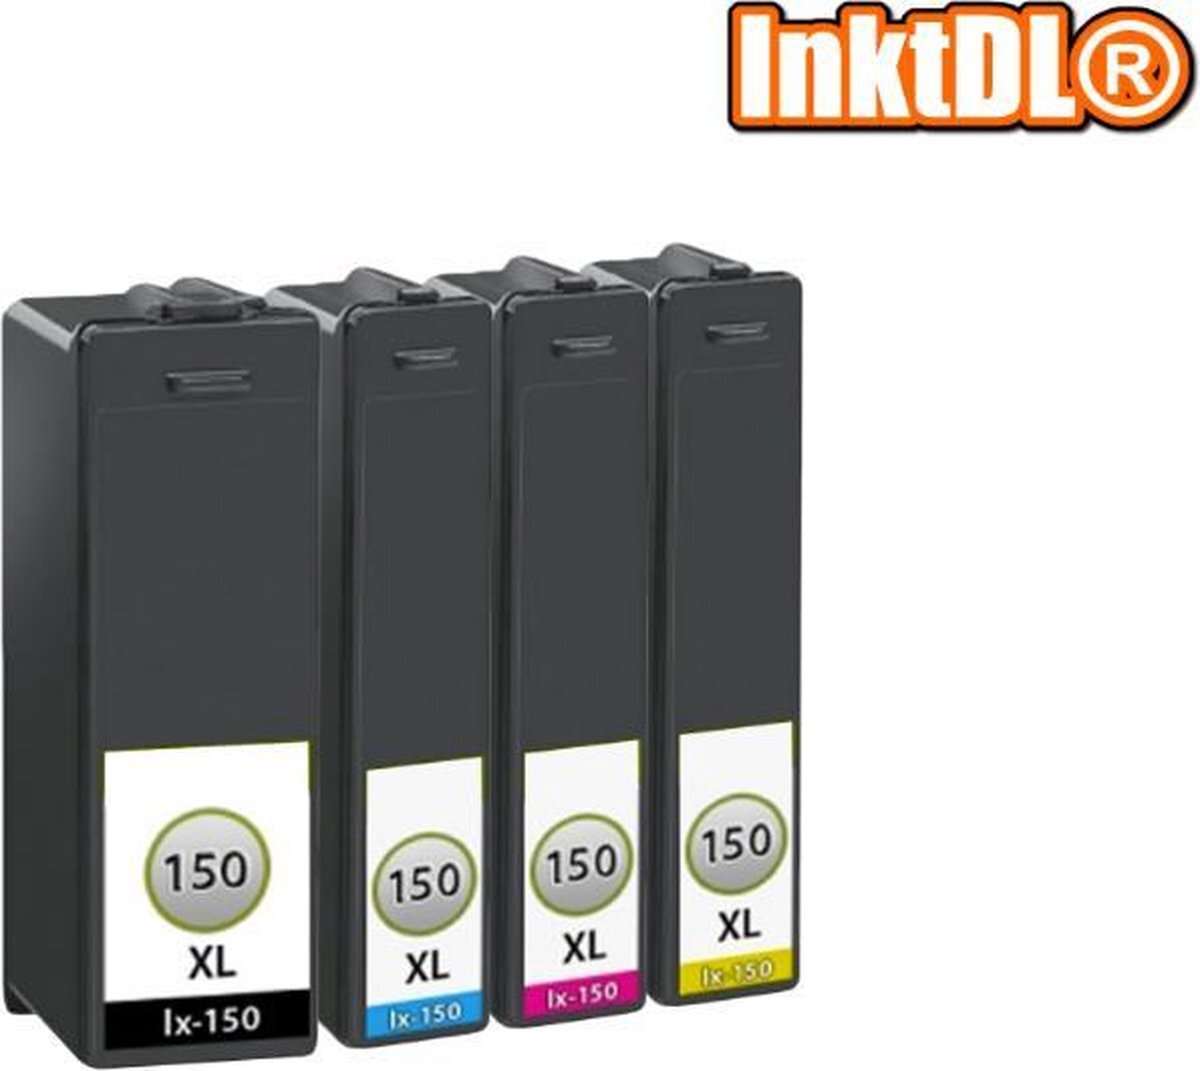 InktDL Compatible inkt cartridges voor Lexmark 150 / 150XL| Multipack van 4 cartridges geschikt voor Lexmark Interpret S415, Lexmark Intuition S515, Lexmark Pro 715, Lexmark Pro 910, Lexmark Pro 915, Lexmark S315